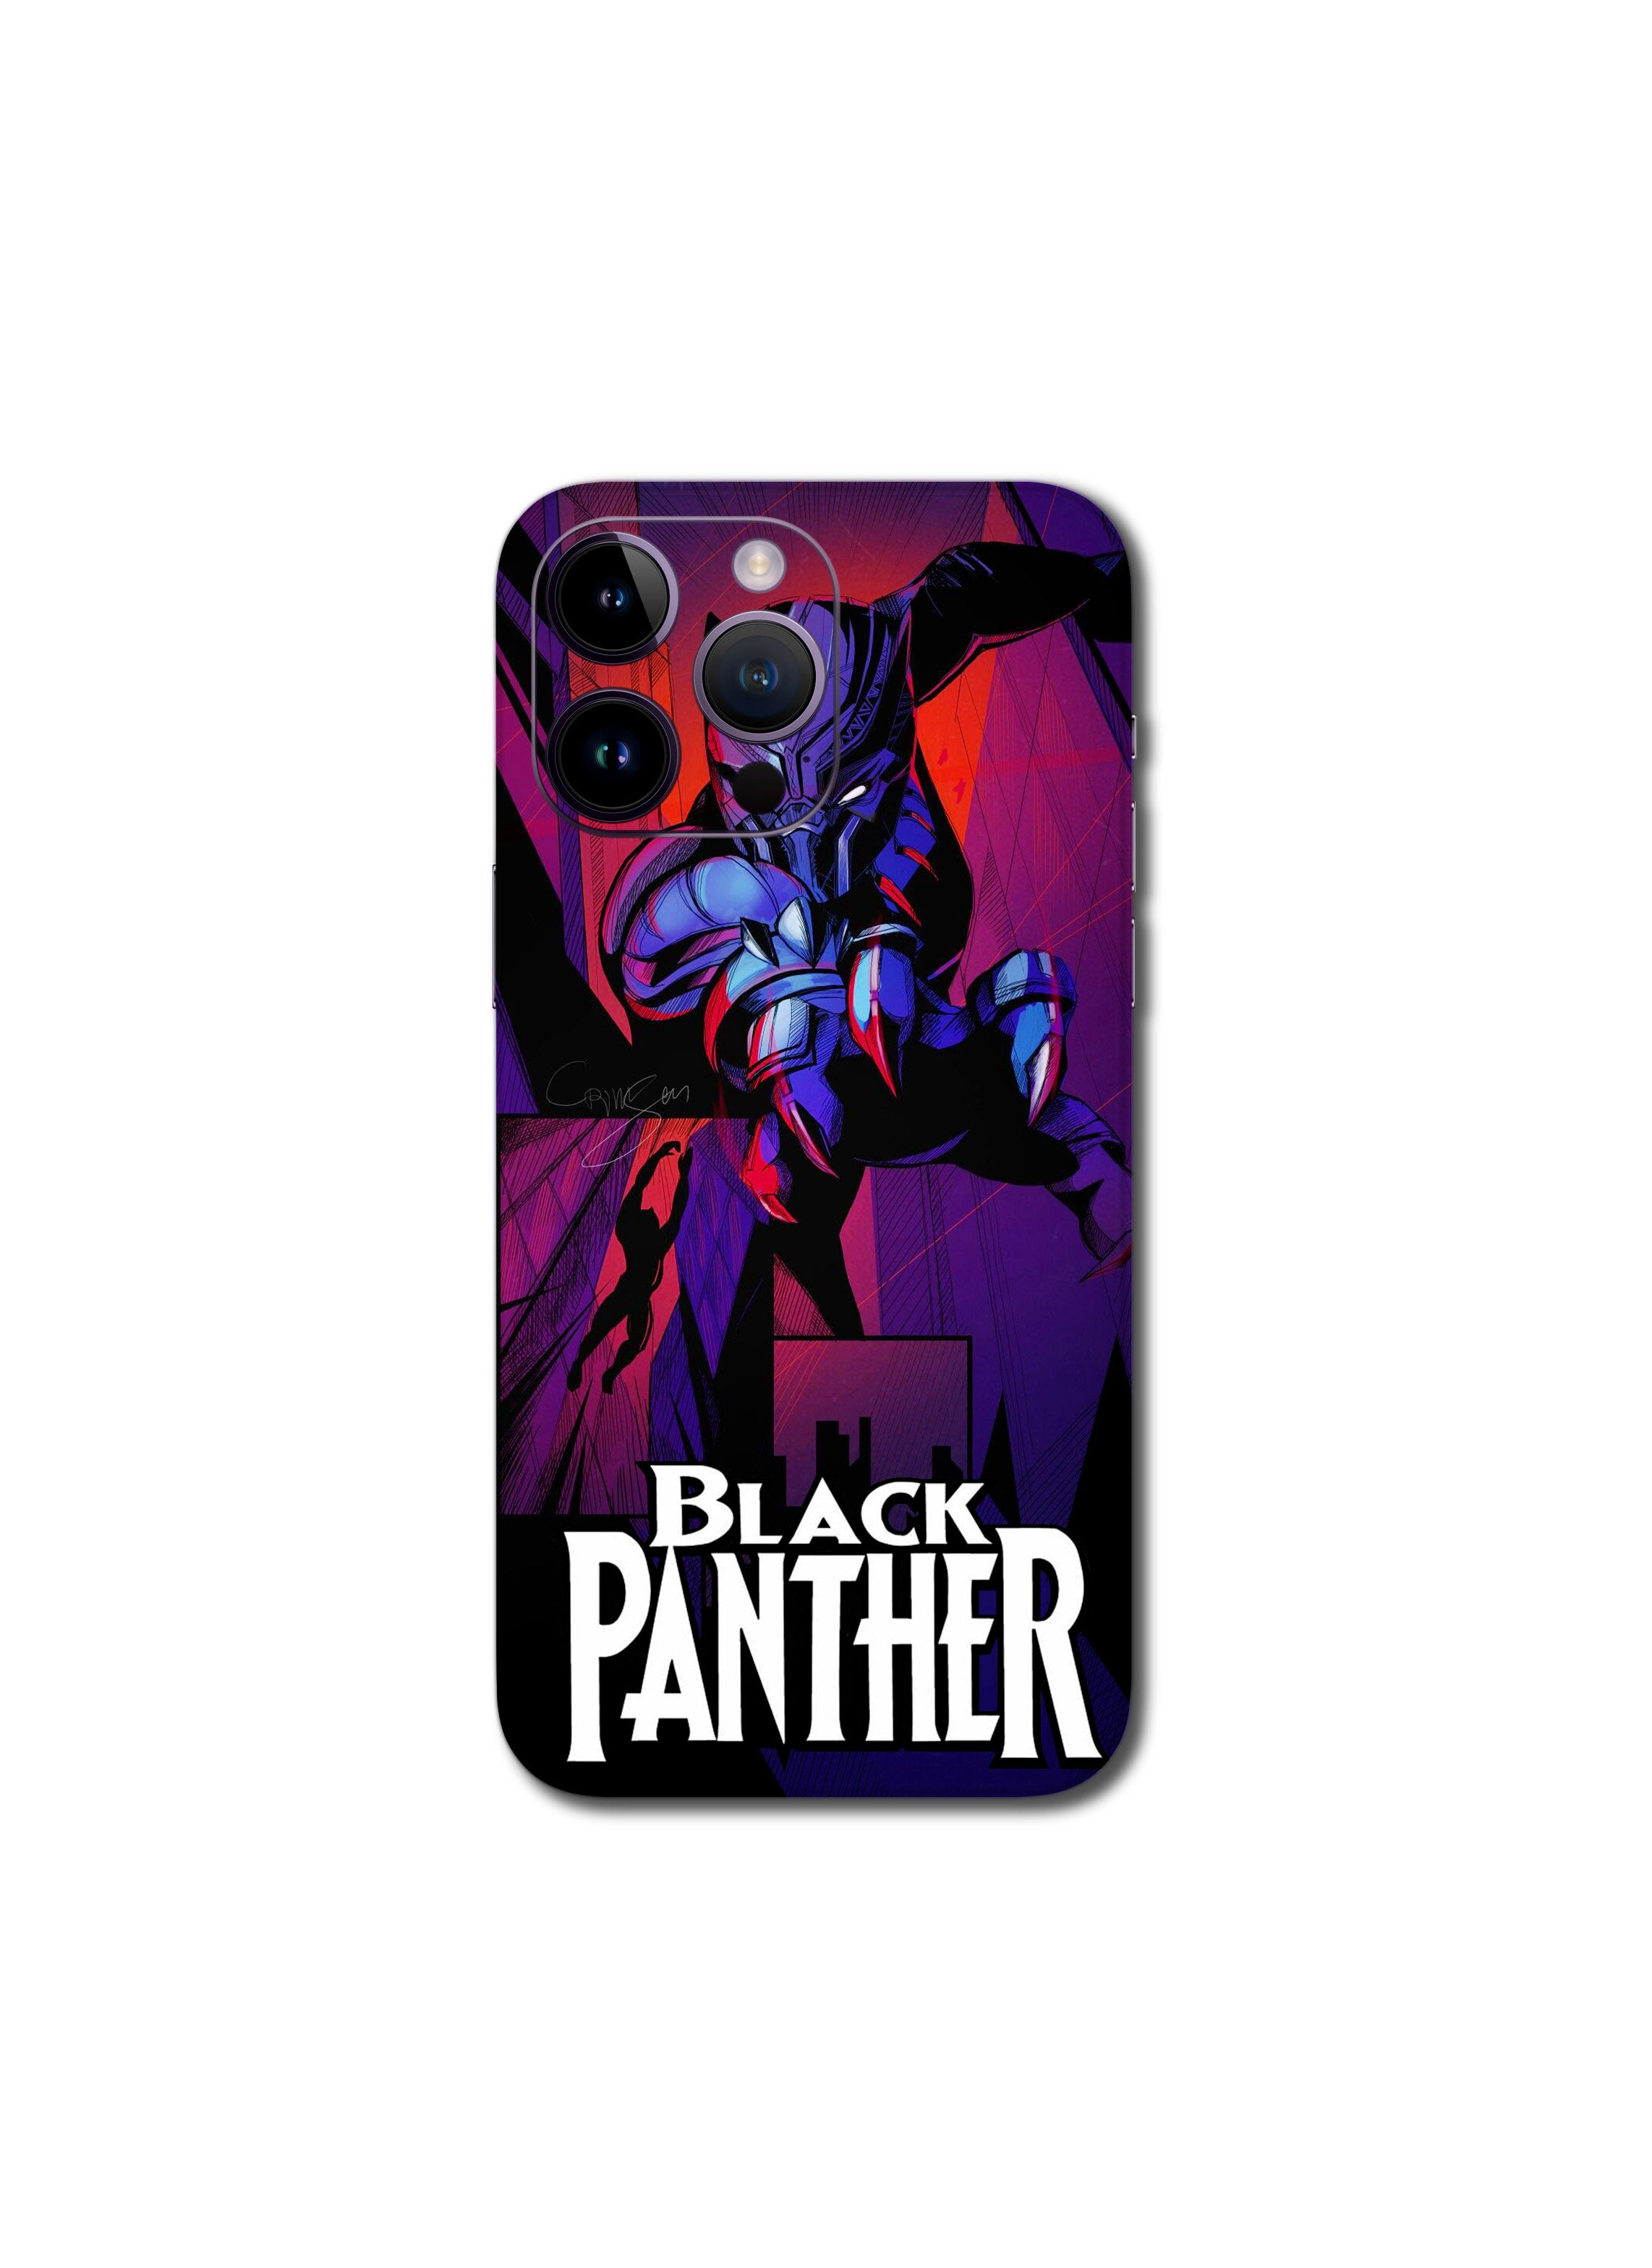 Black panther (400)